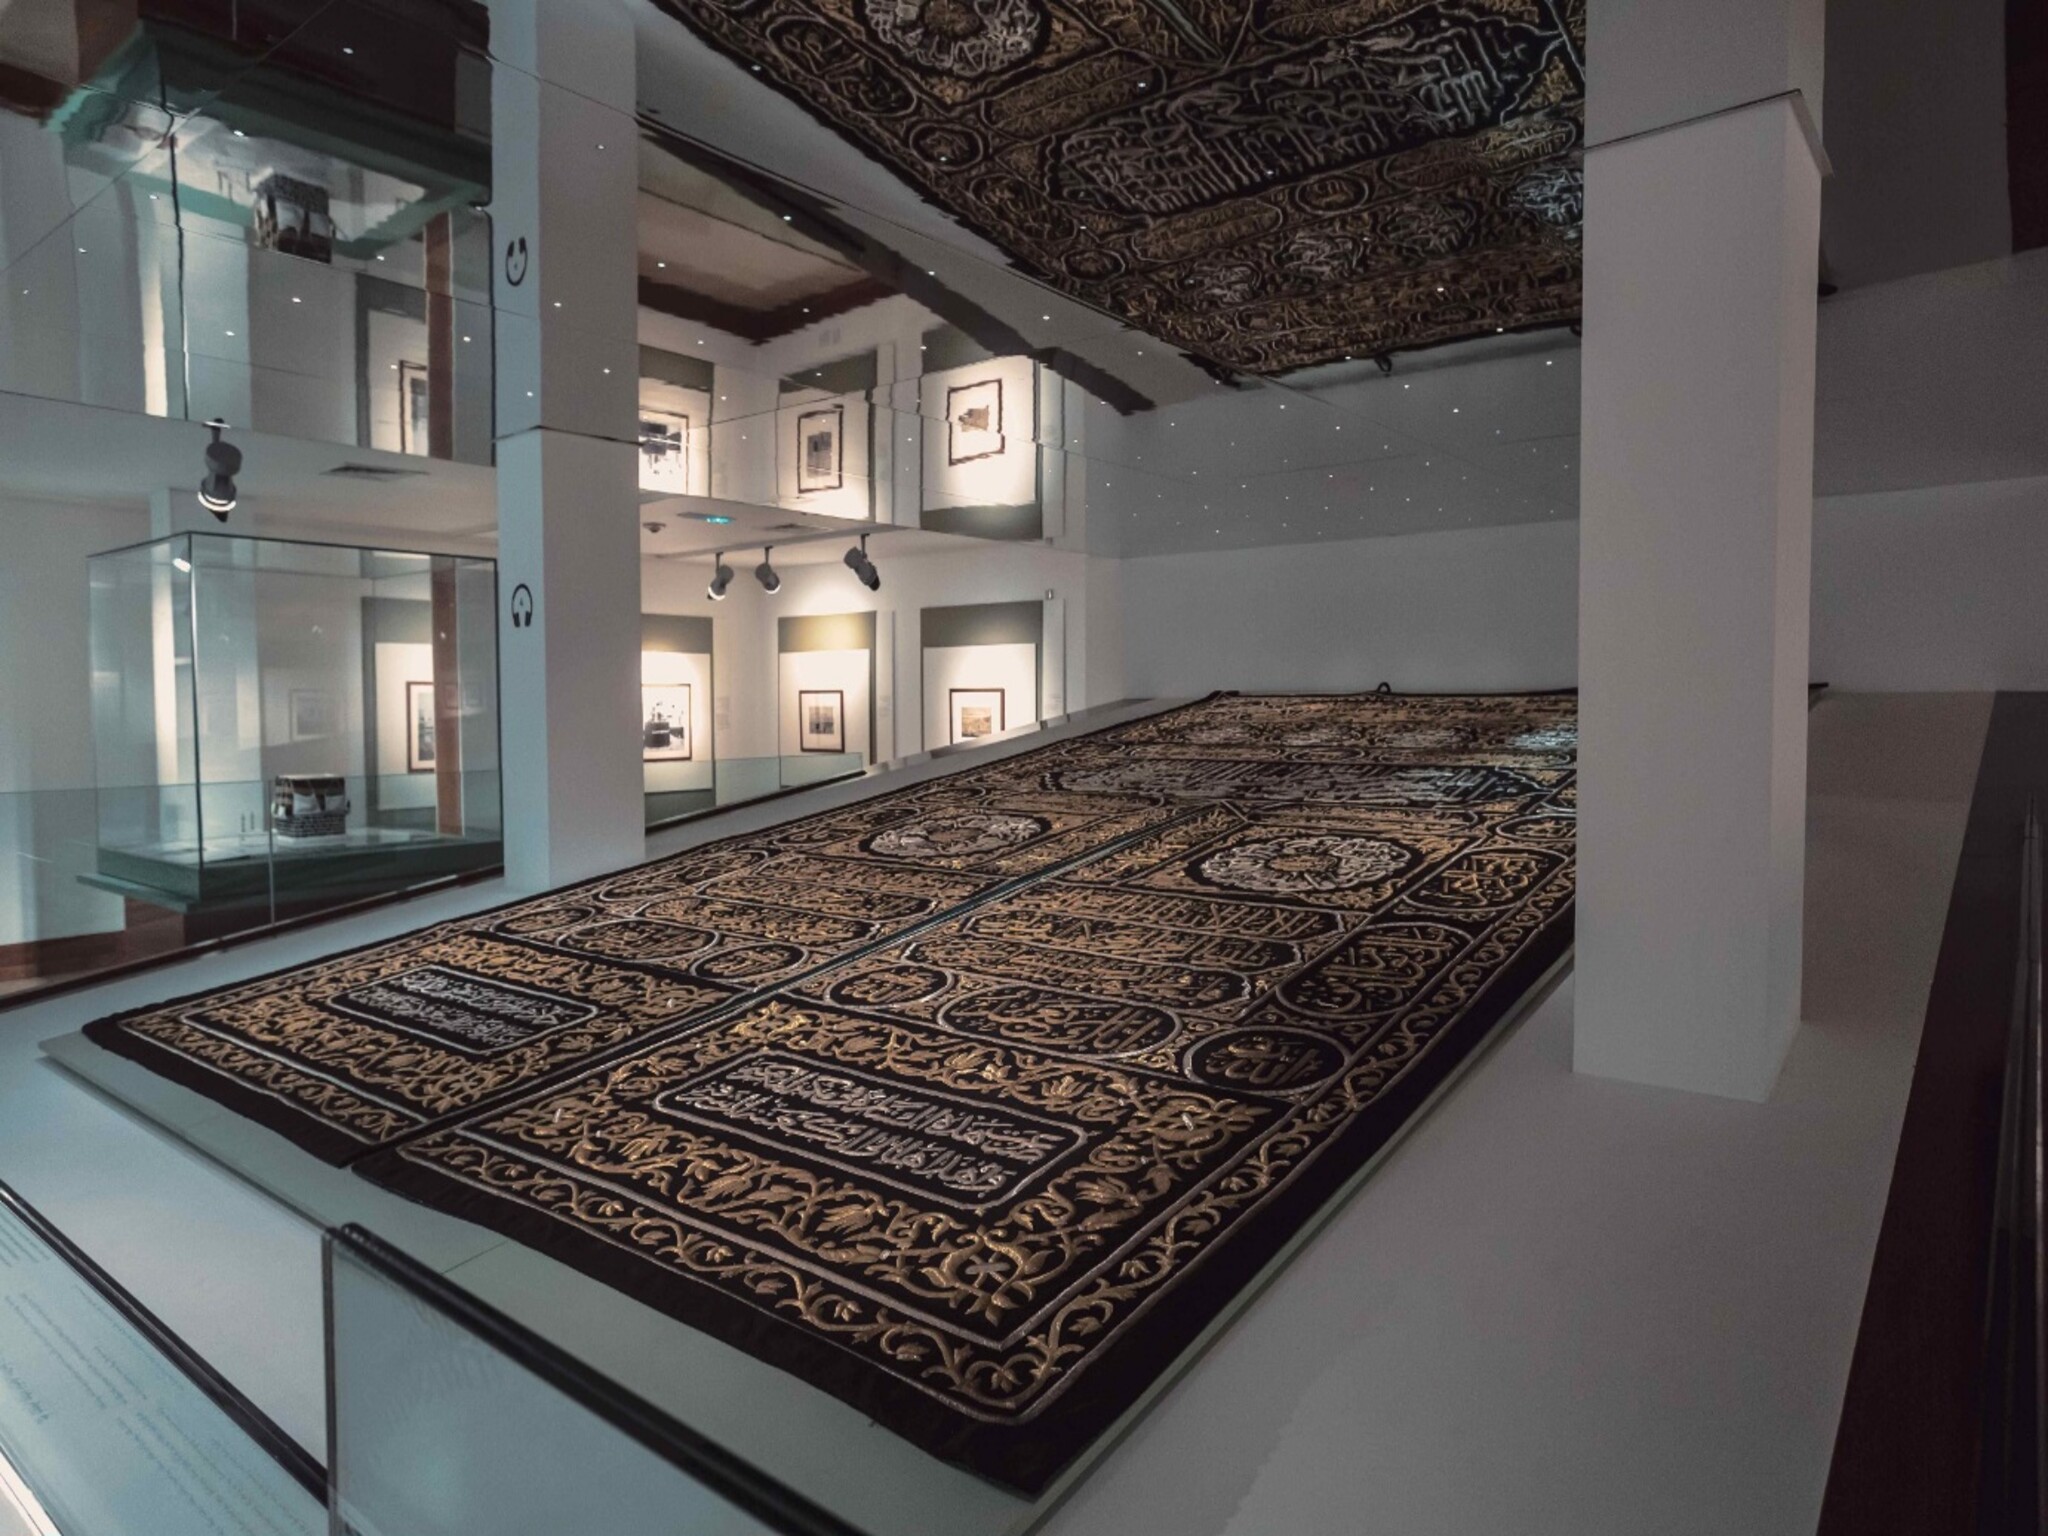 إنطلاق فعالية "لمة رمضانية" لأول مرة في متحف الشارقة للحضارة الإسلامية